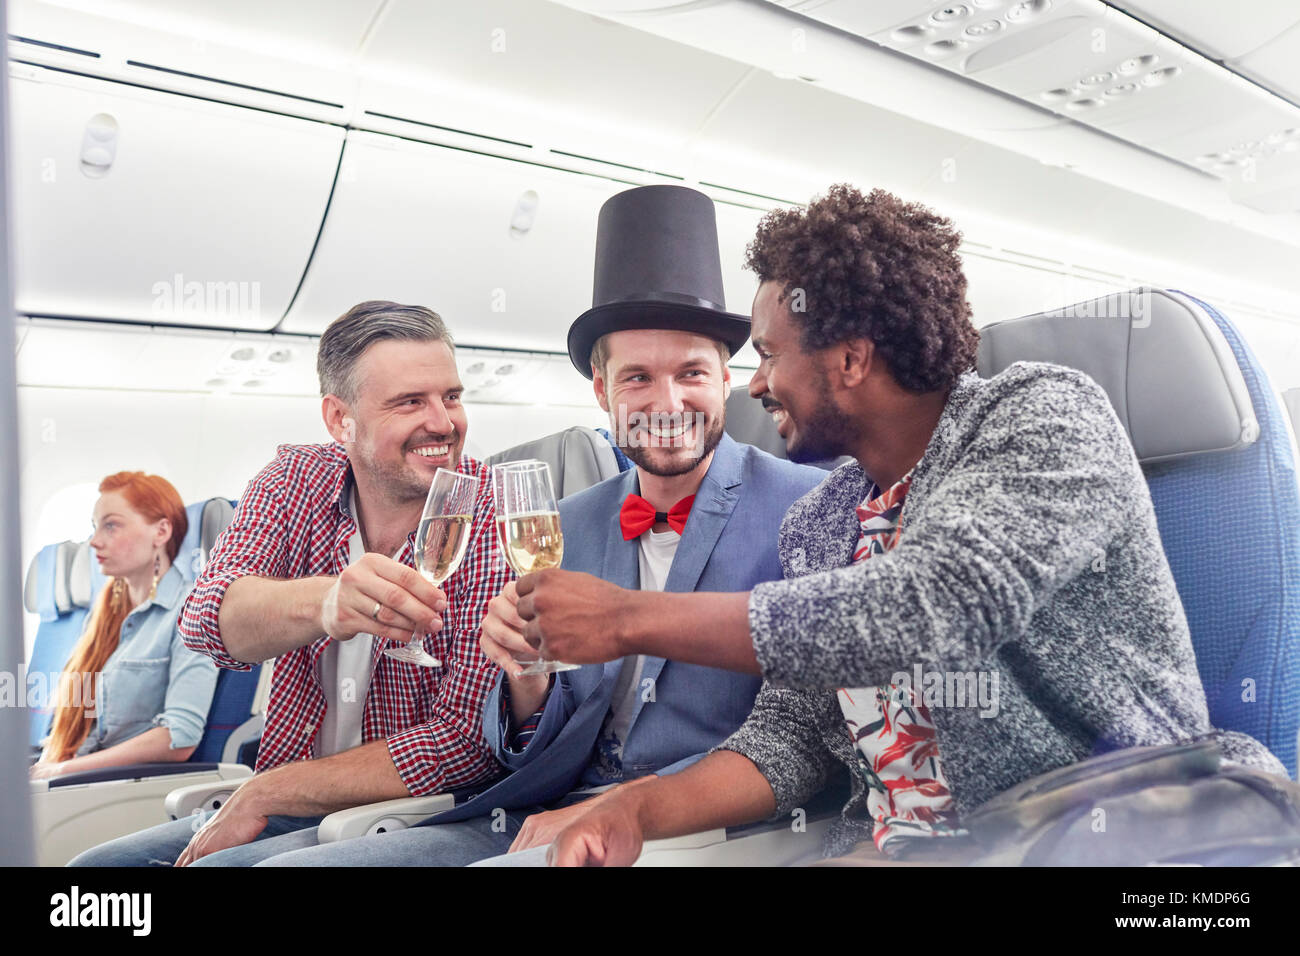 Jeunes amis de sexe masculin qui toastent des verres à champagne en première classe avion Banque D'Images